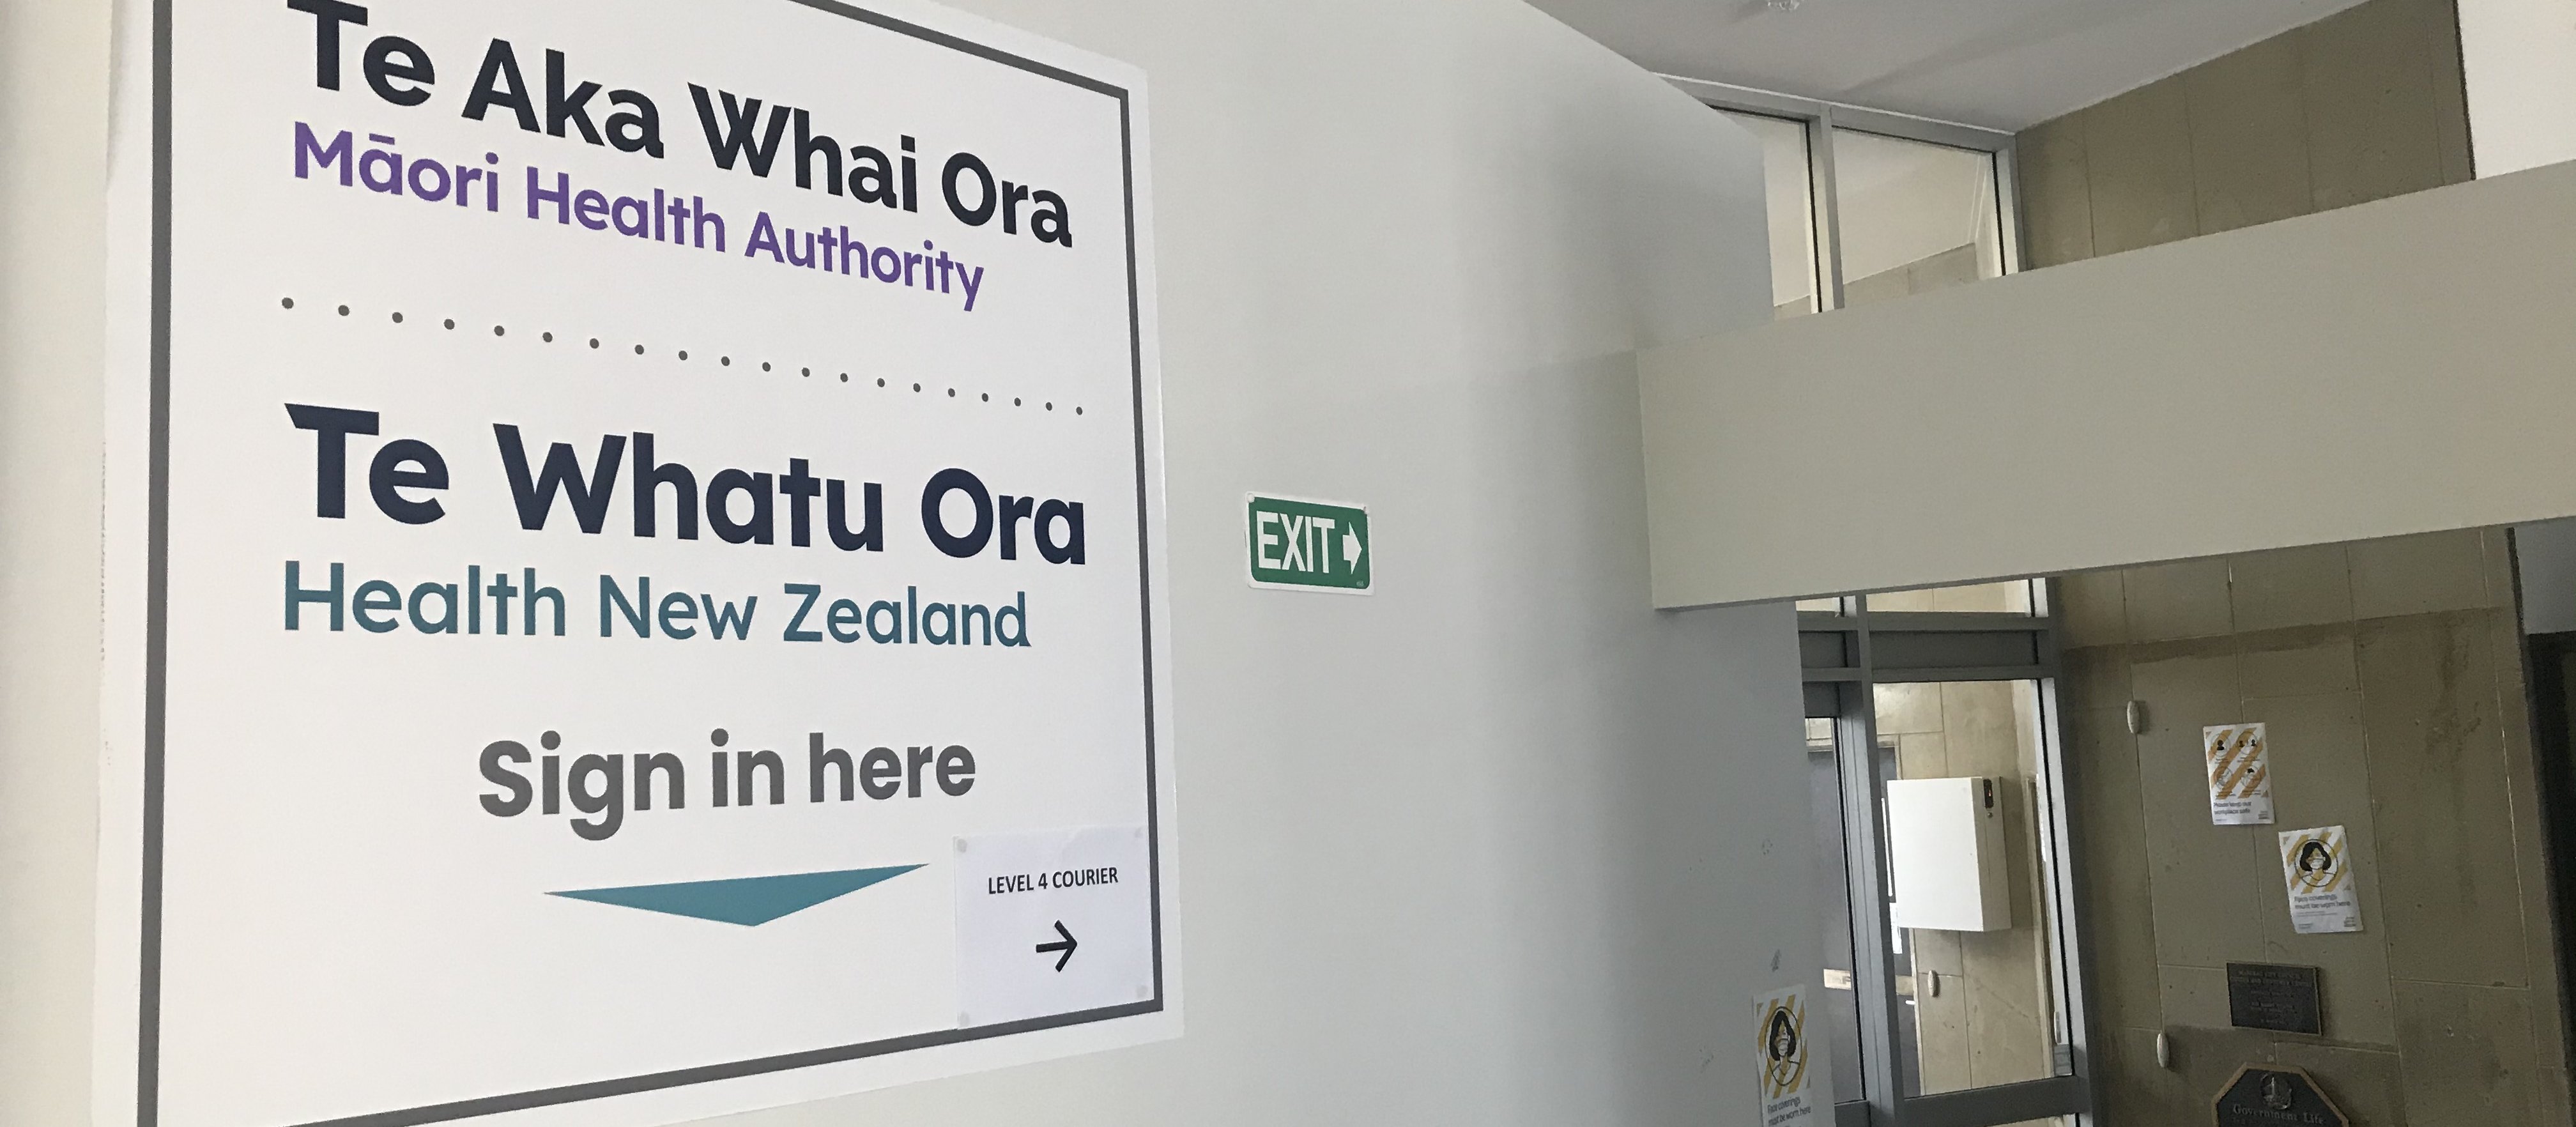 Te Aka Whai Ora and Te Whatu Ora sign